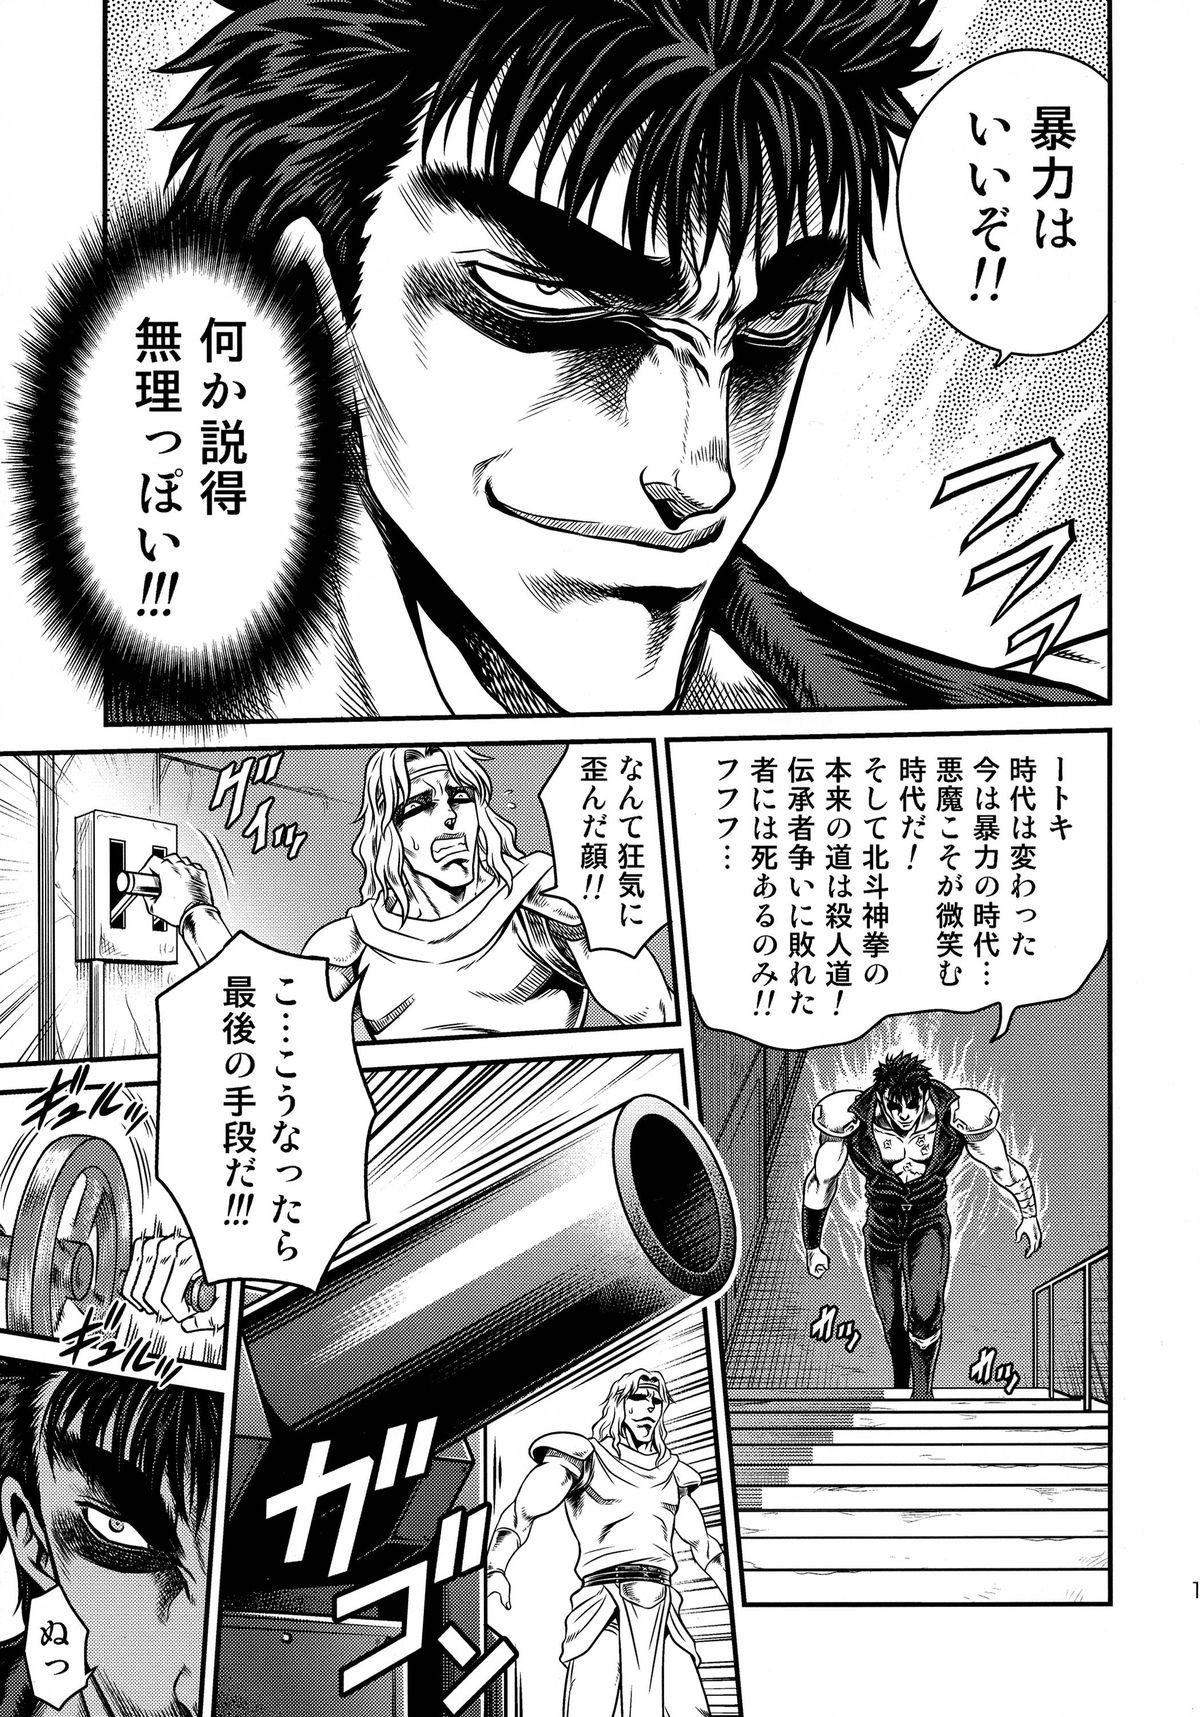 Bj Seikimatsu Tetsu Kamen Densetsu 4 - Fist of the north star Whatsapp - Page 13